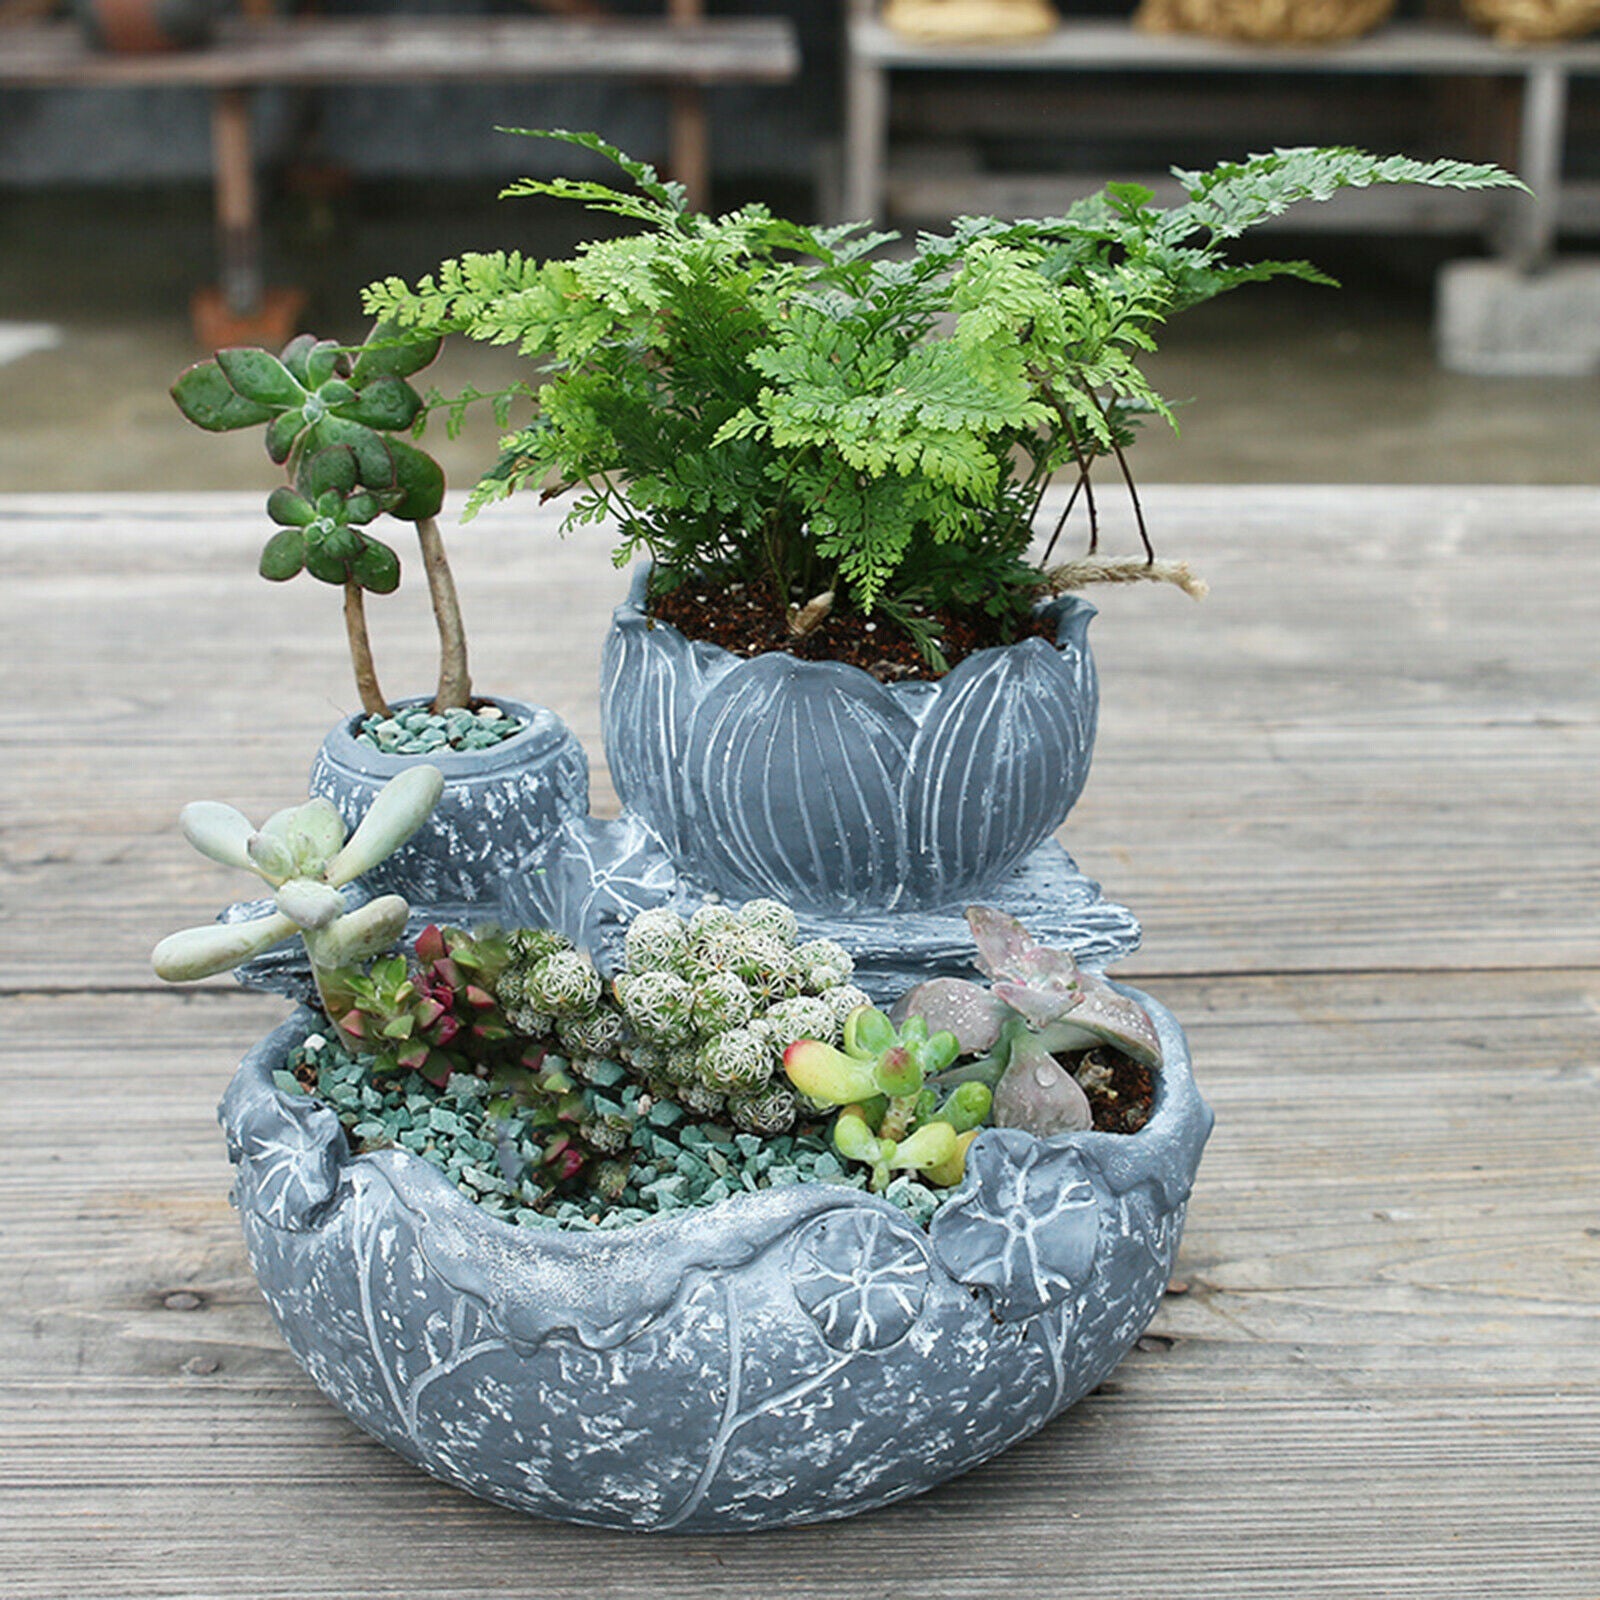 Succulent Planter Flowers Vase Container Home Table Landscape Ornament